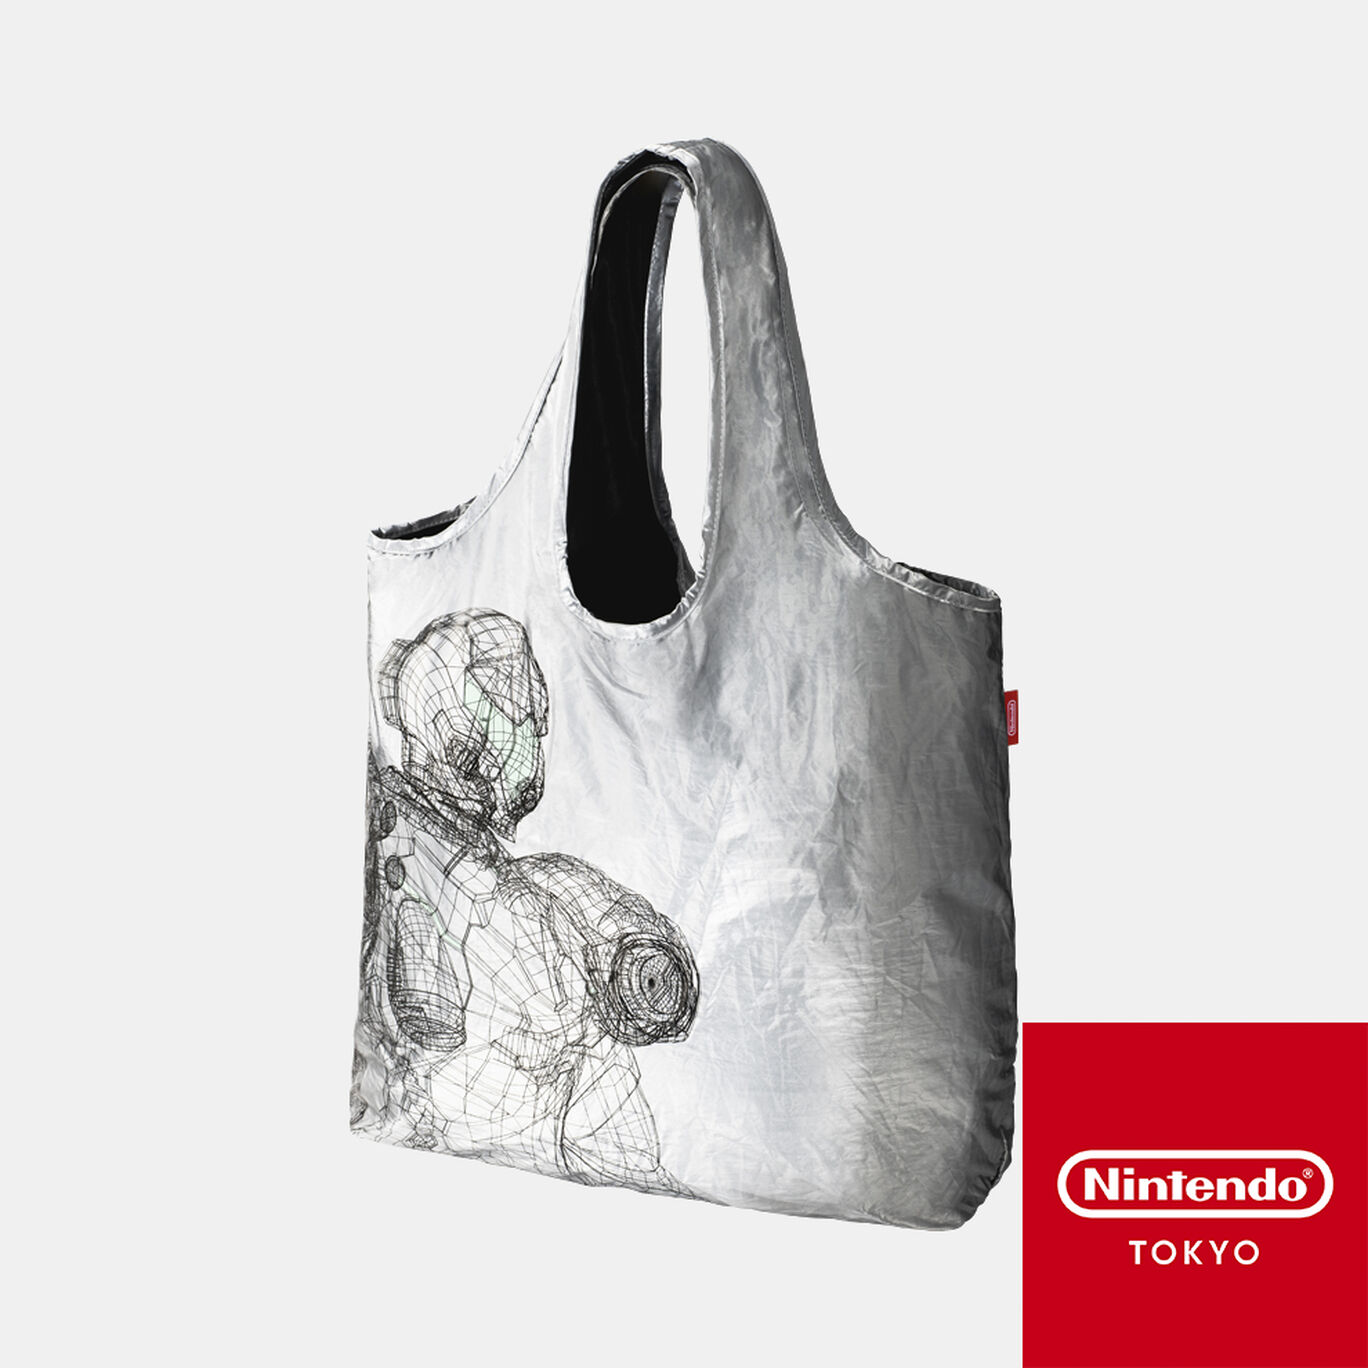 【新商品】折りたたみバッグ メトロイド ドレッド【Nintendo TOKYO取り扱い商品】